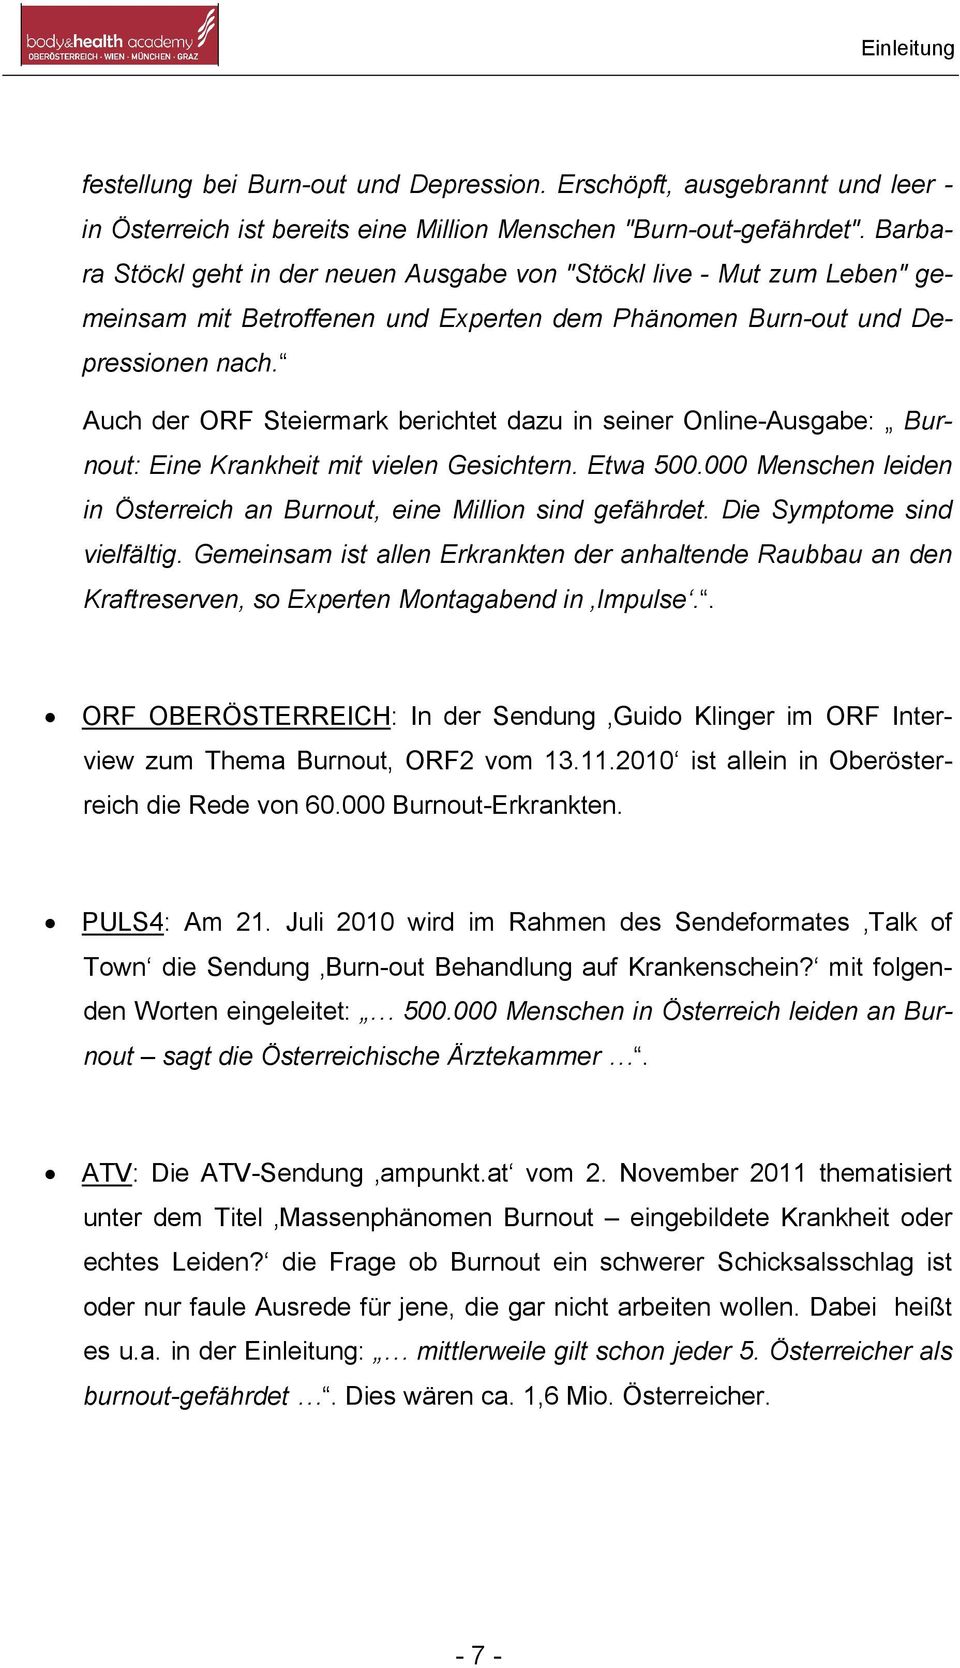 Auch der ORF Steiermark berichtet dazu in seiner Online-Ausgabe: Burnout: Eine Krankheit mit vielen Gesichtern. Etwa 500.000 Menschen leiden in Österreich an Burnout, eine Million sind gefährdet.